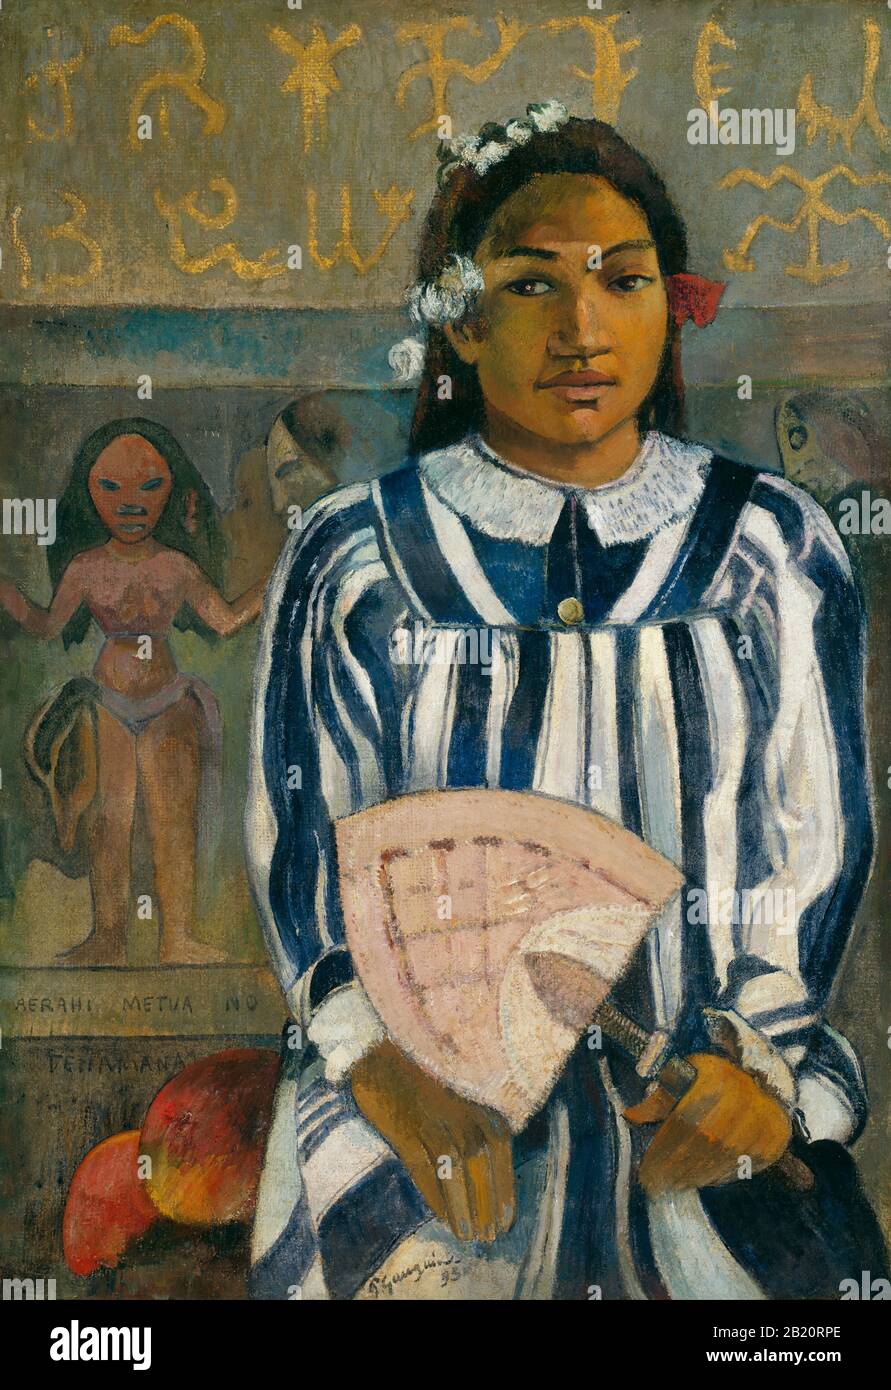 Tehamana Ha Molti Genitori (Mea rahi metua no Teha'amana) (1893) 19th Secolo Pittura di Paul Gauguin - Altissima risoluzione e qualità immagine Foto Stock